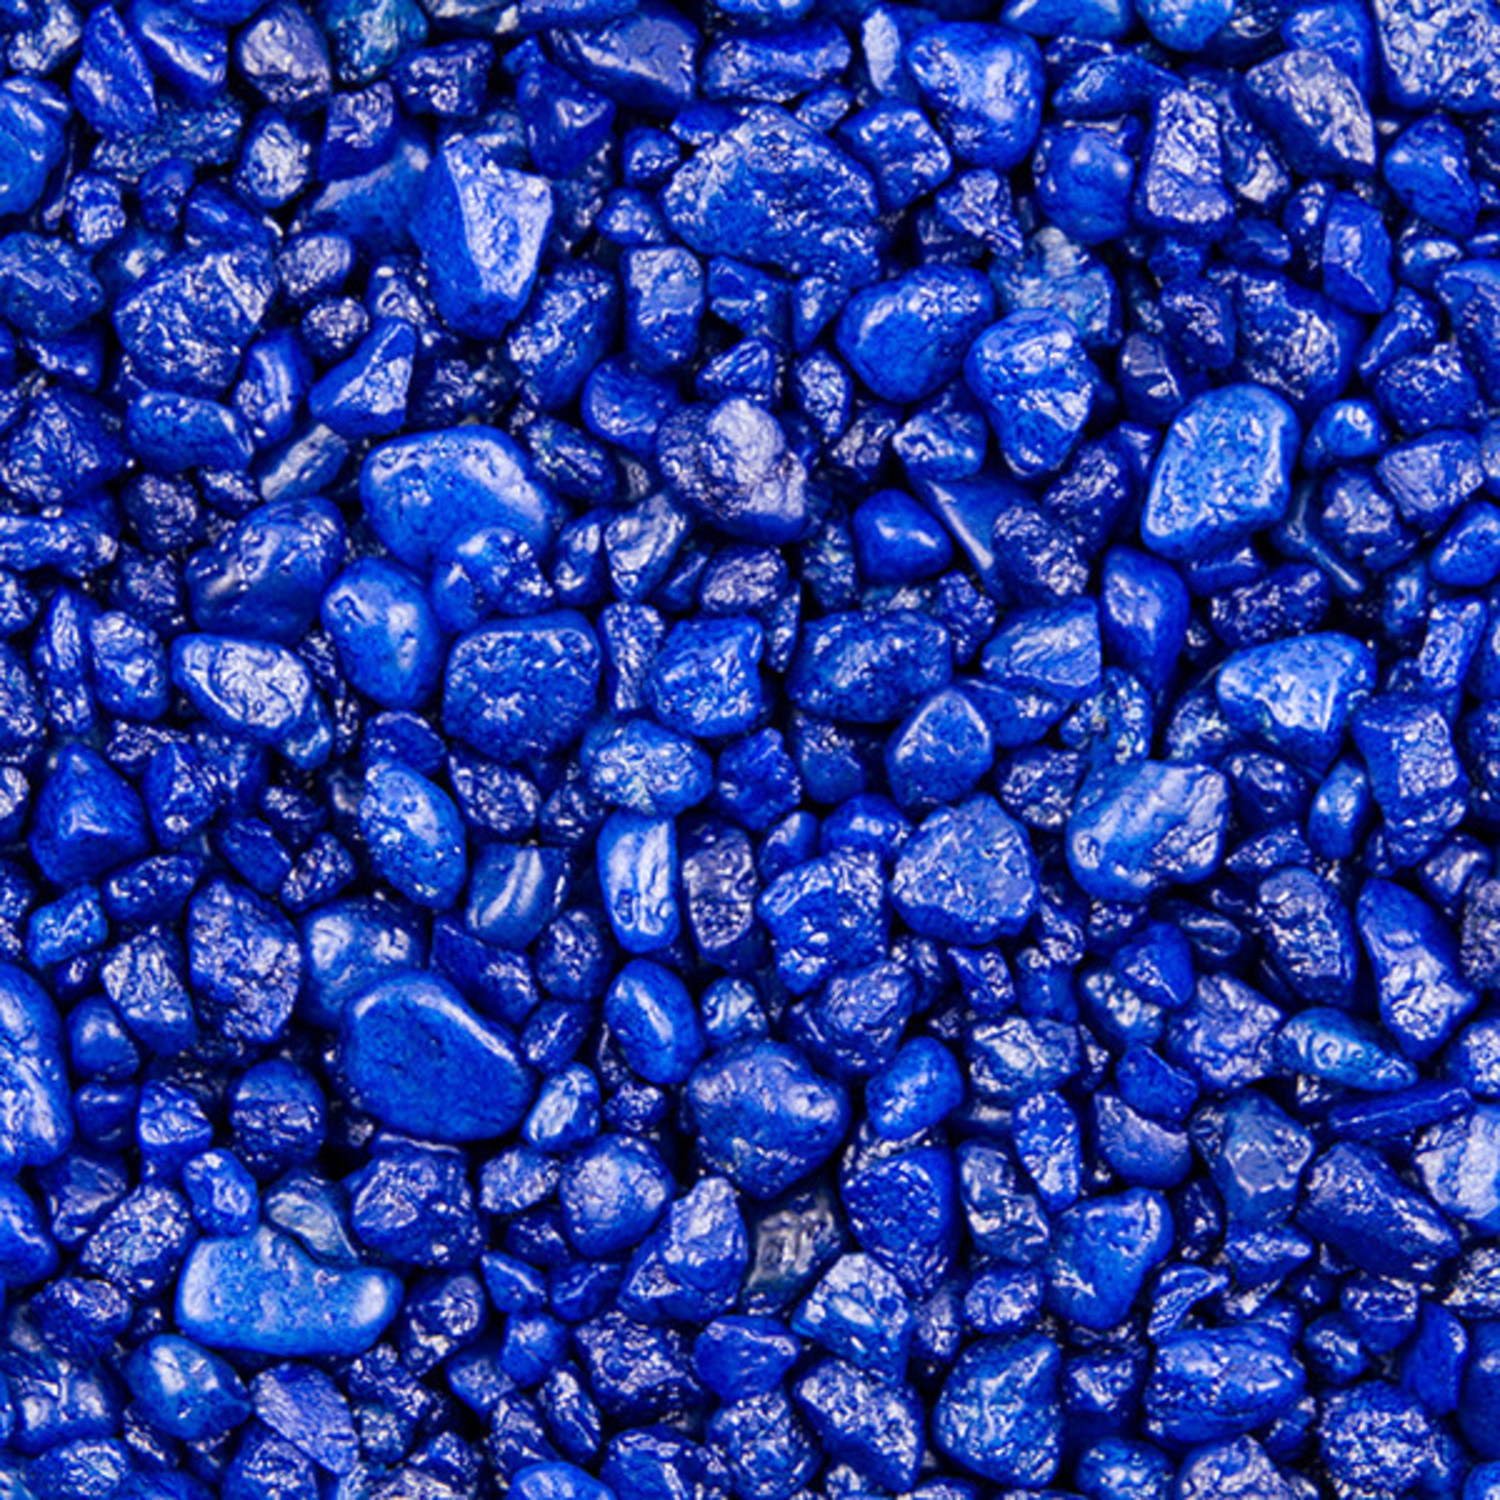 JBL Filterschaum blau - Olibetta